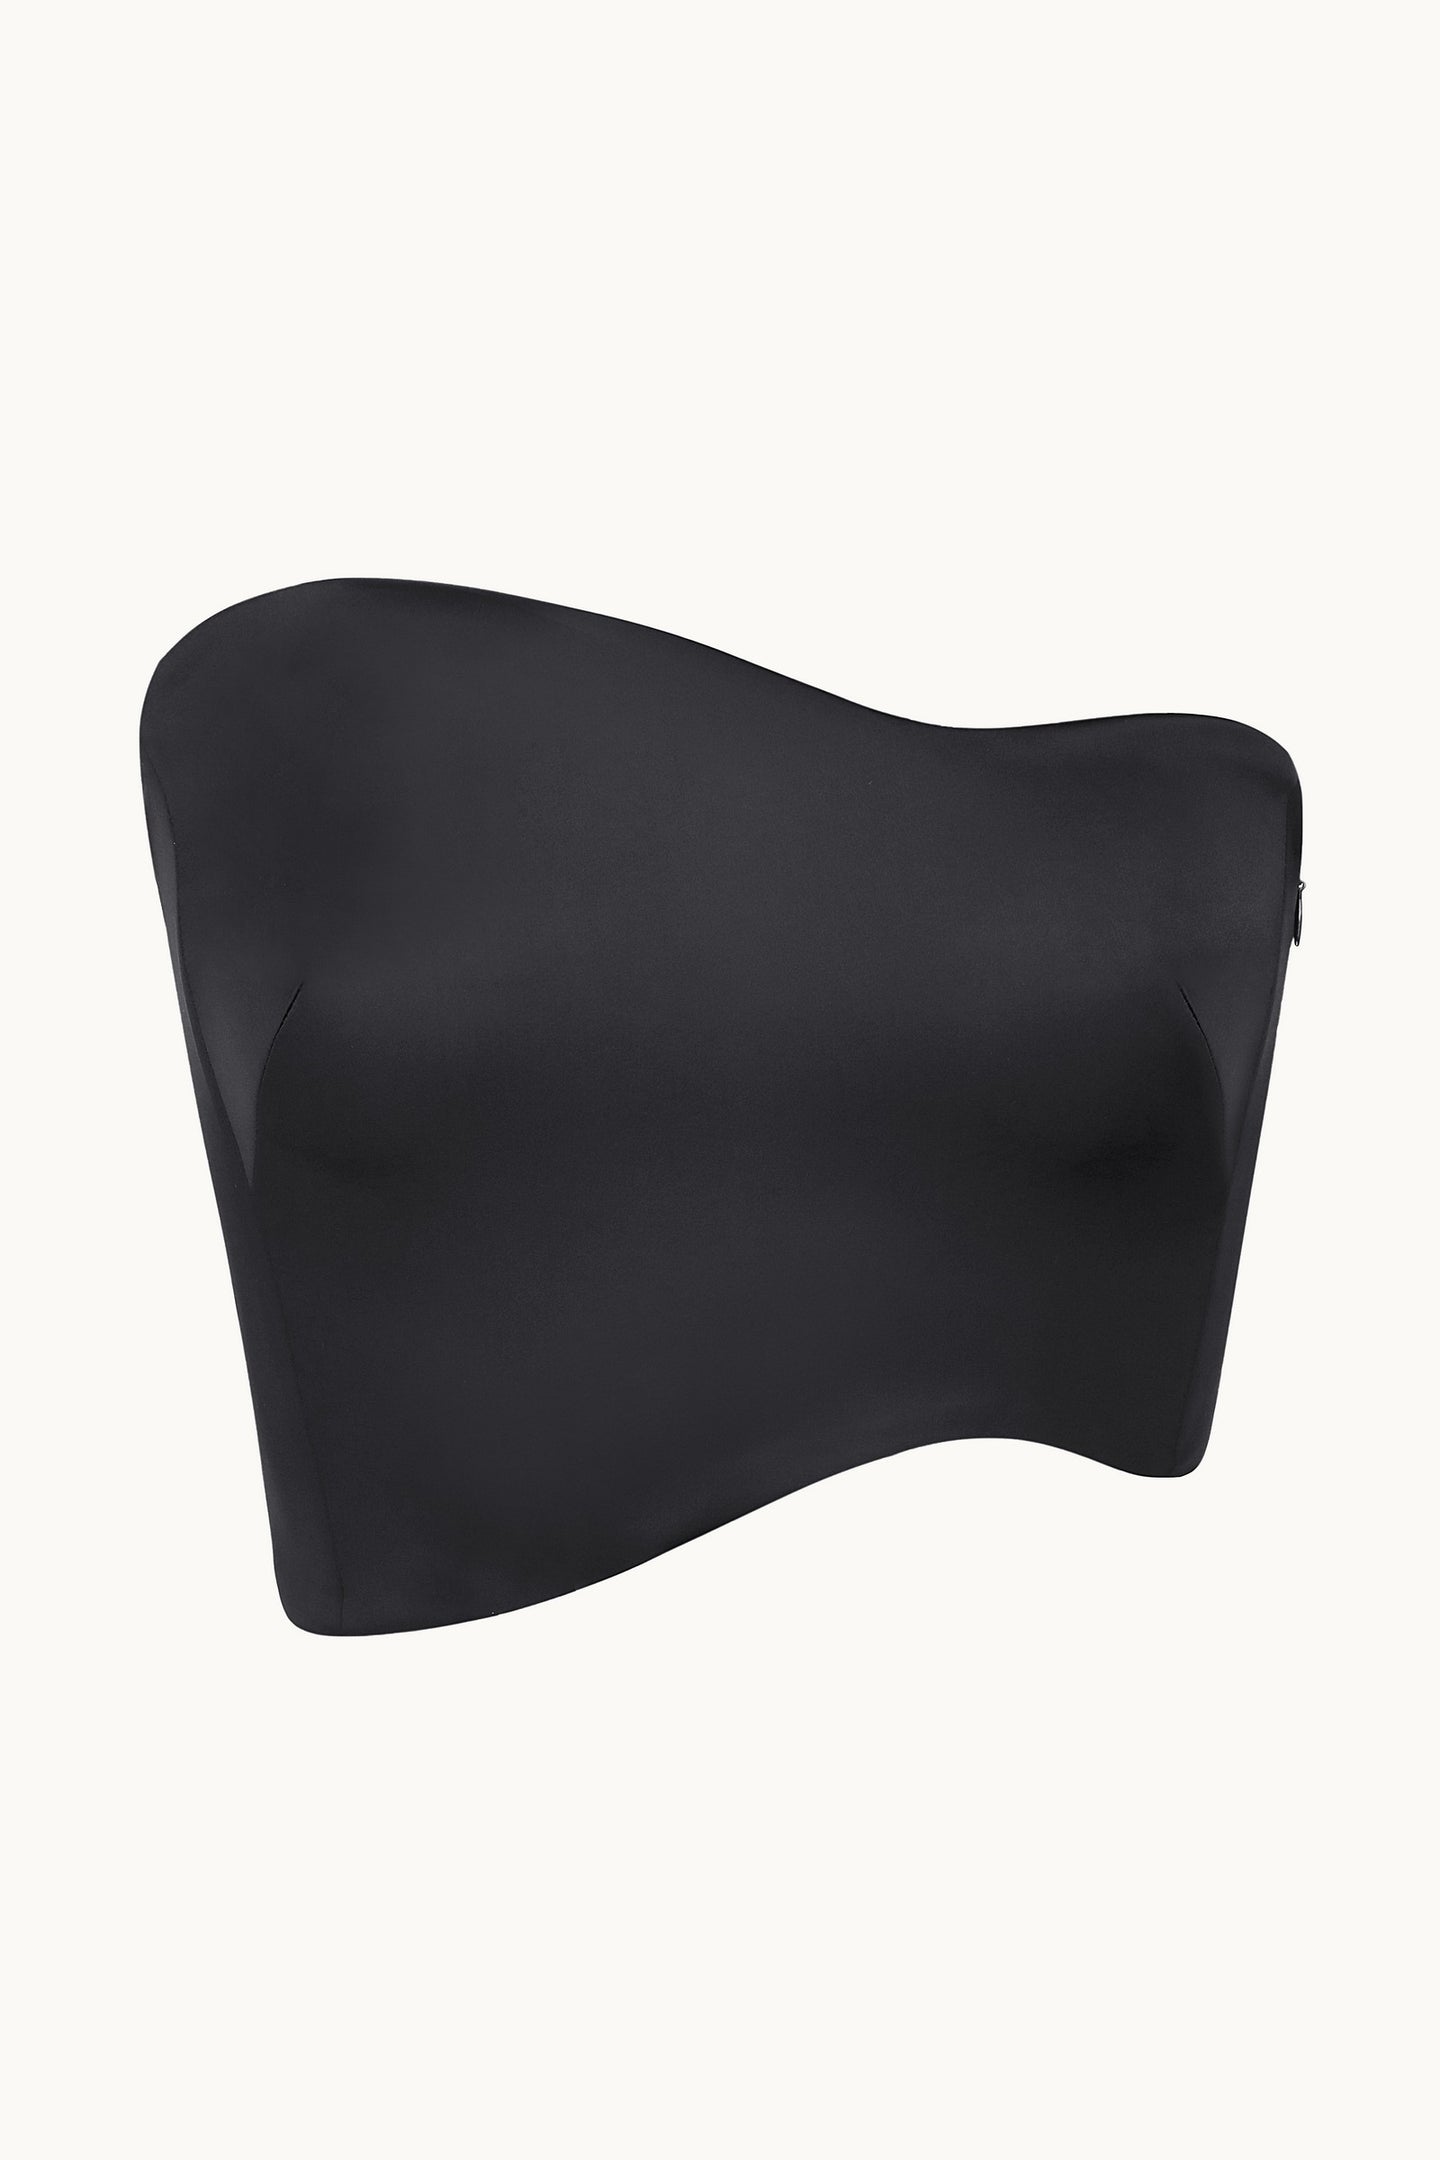 Oriane black corsette front view